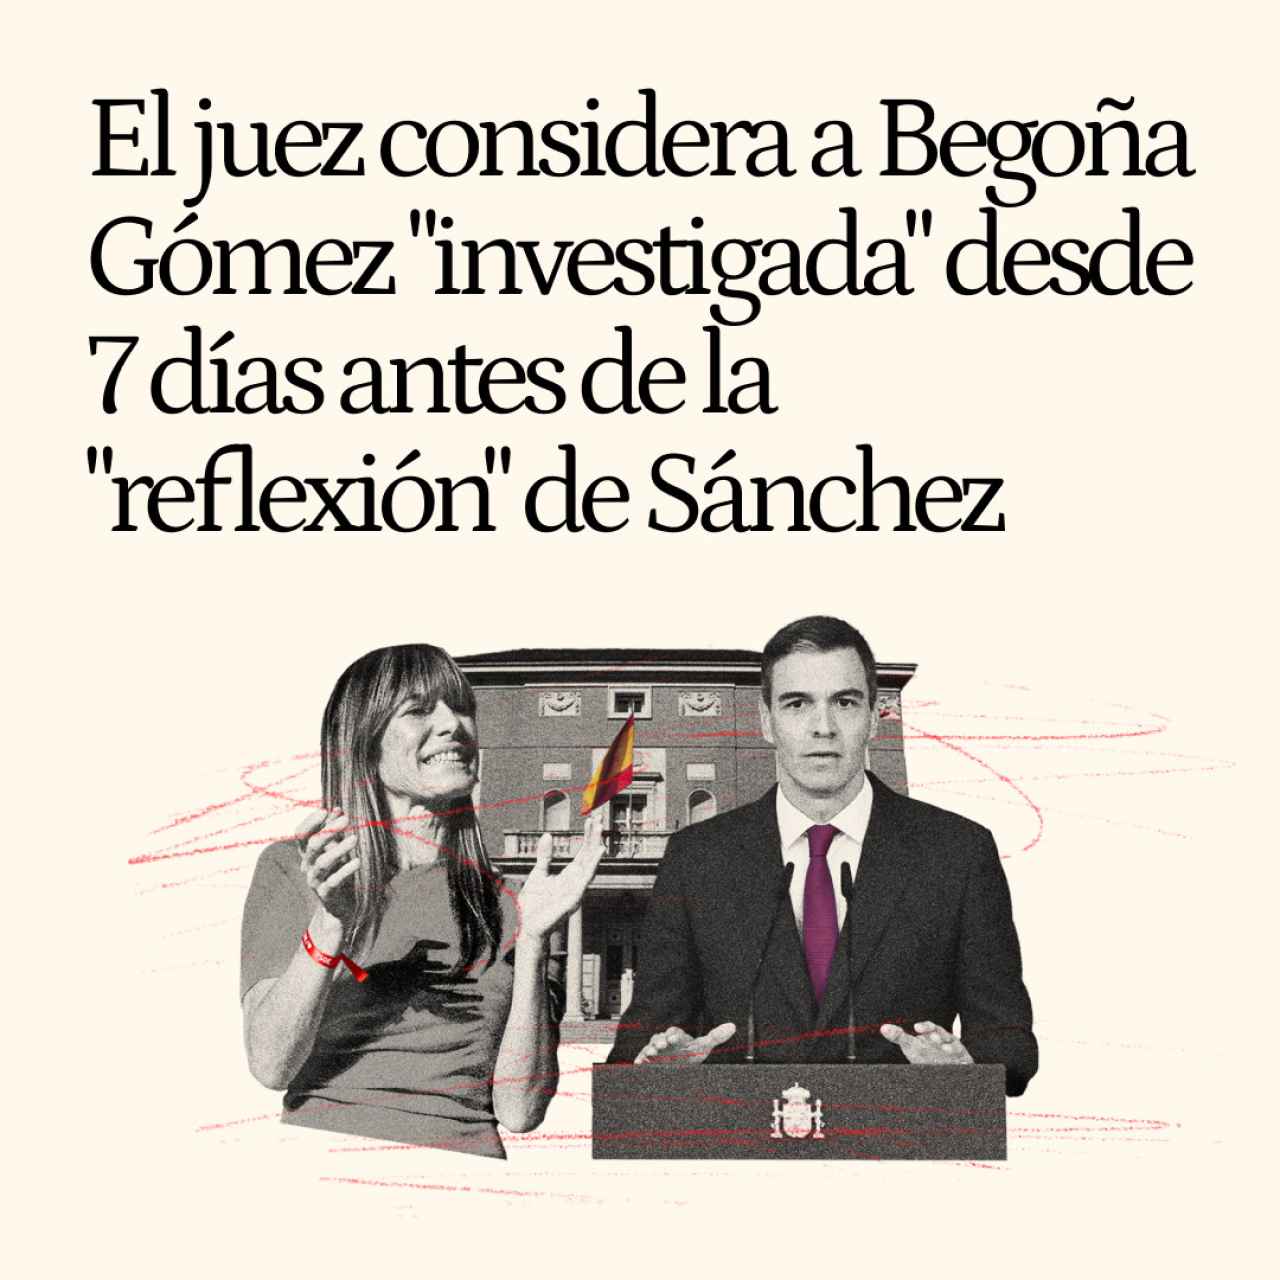 El juez declaró a Begoña Gómez "investigada" siete días antes del "periodo de reflexión" de Sánchez